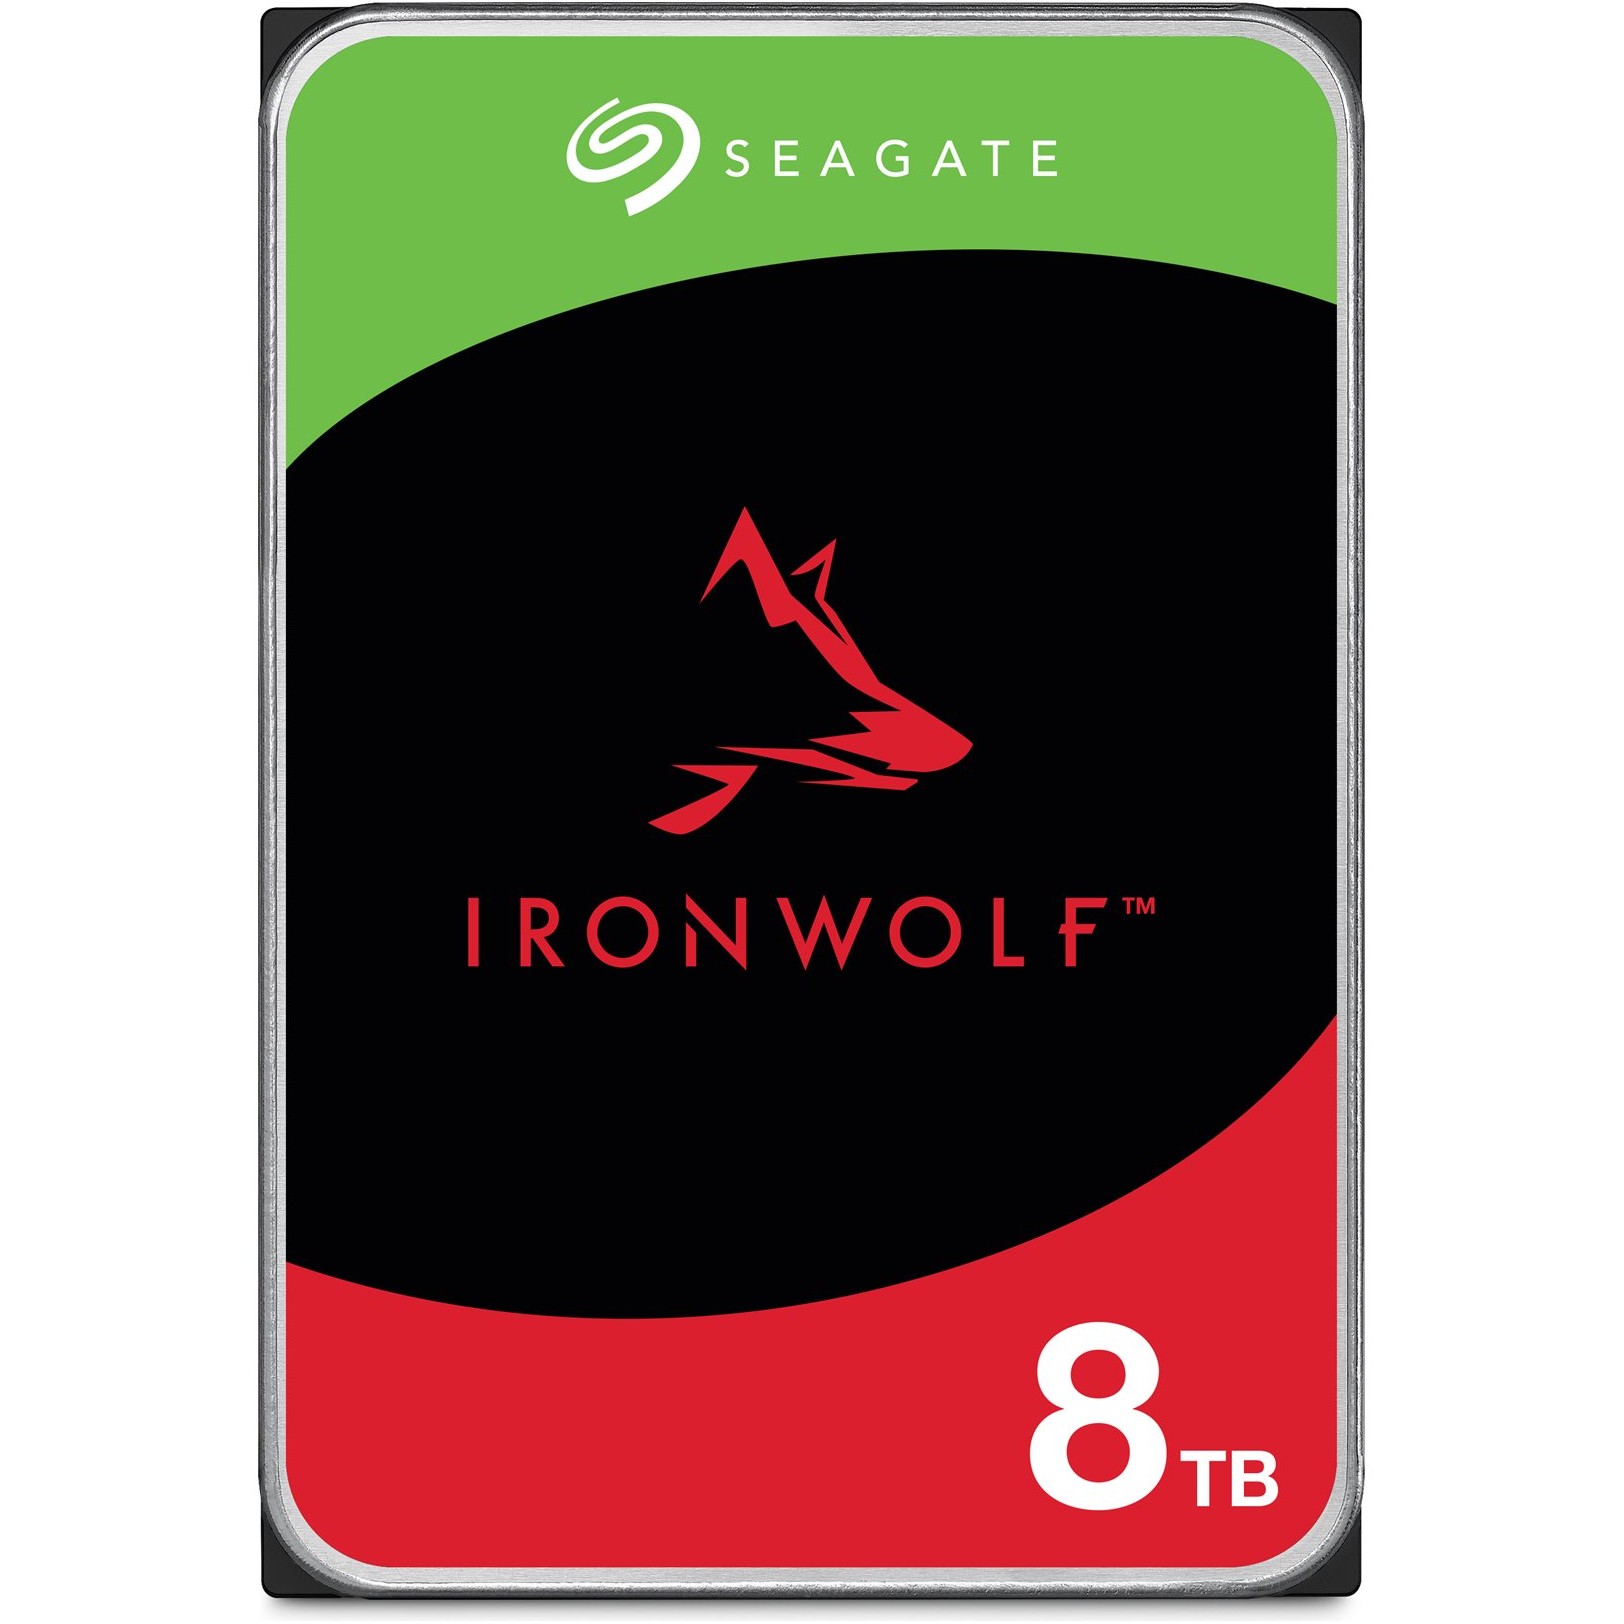 Seagate IronWolf ST8000VN002 internal hard drive - ST8000VN002